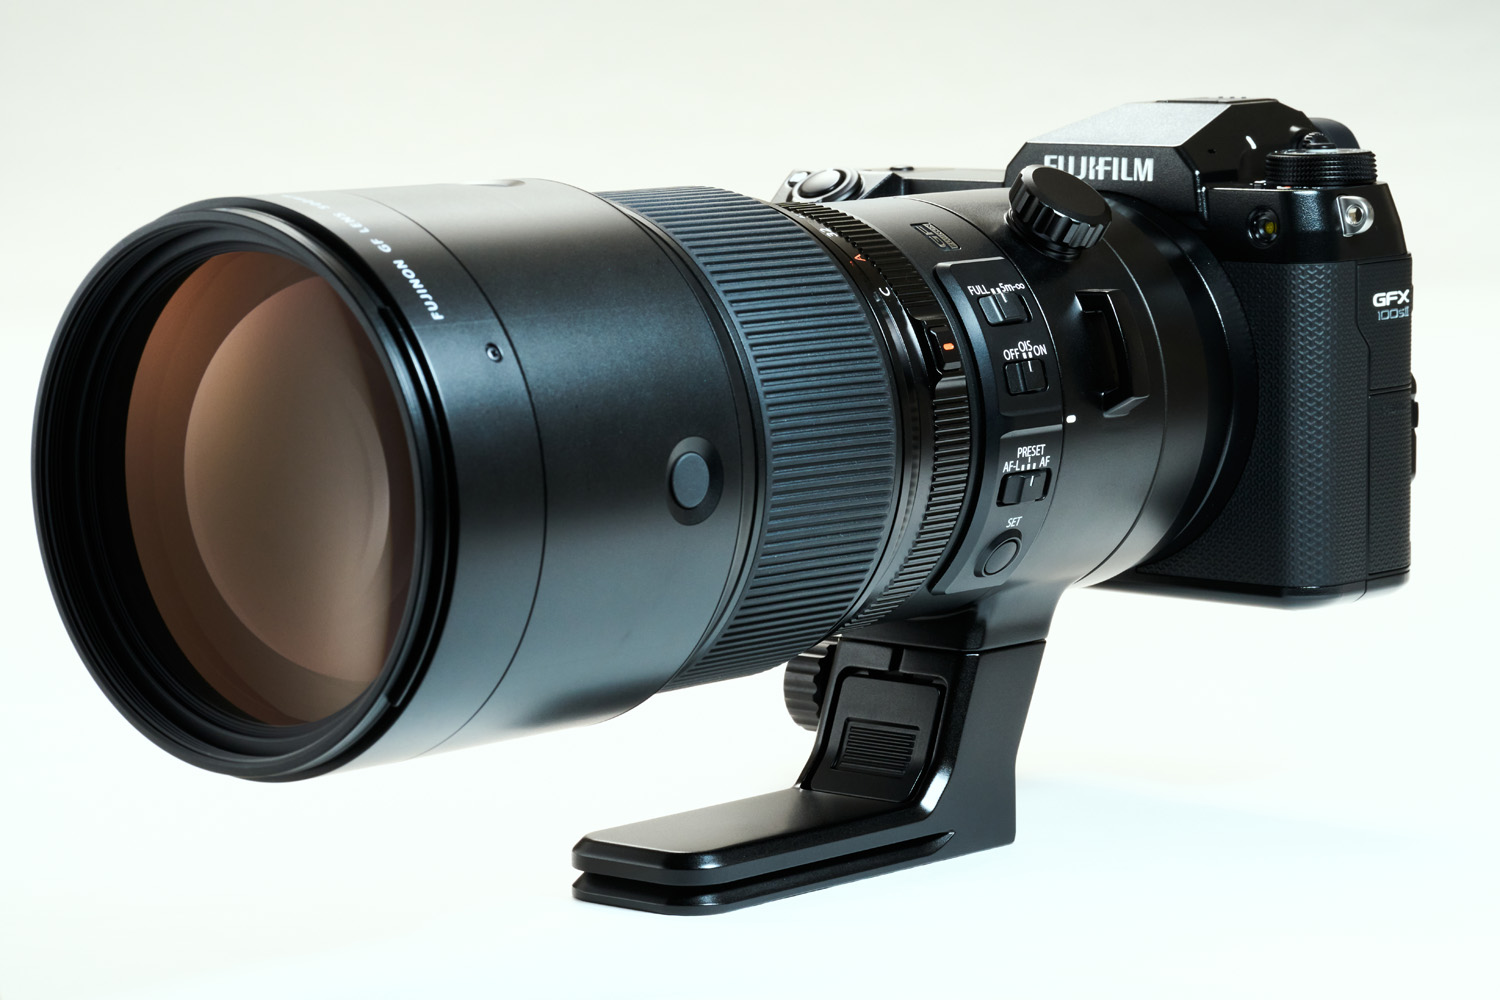 Снимок продукта с объективом Fujinon GF500mm f/5.6 на белом фоне